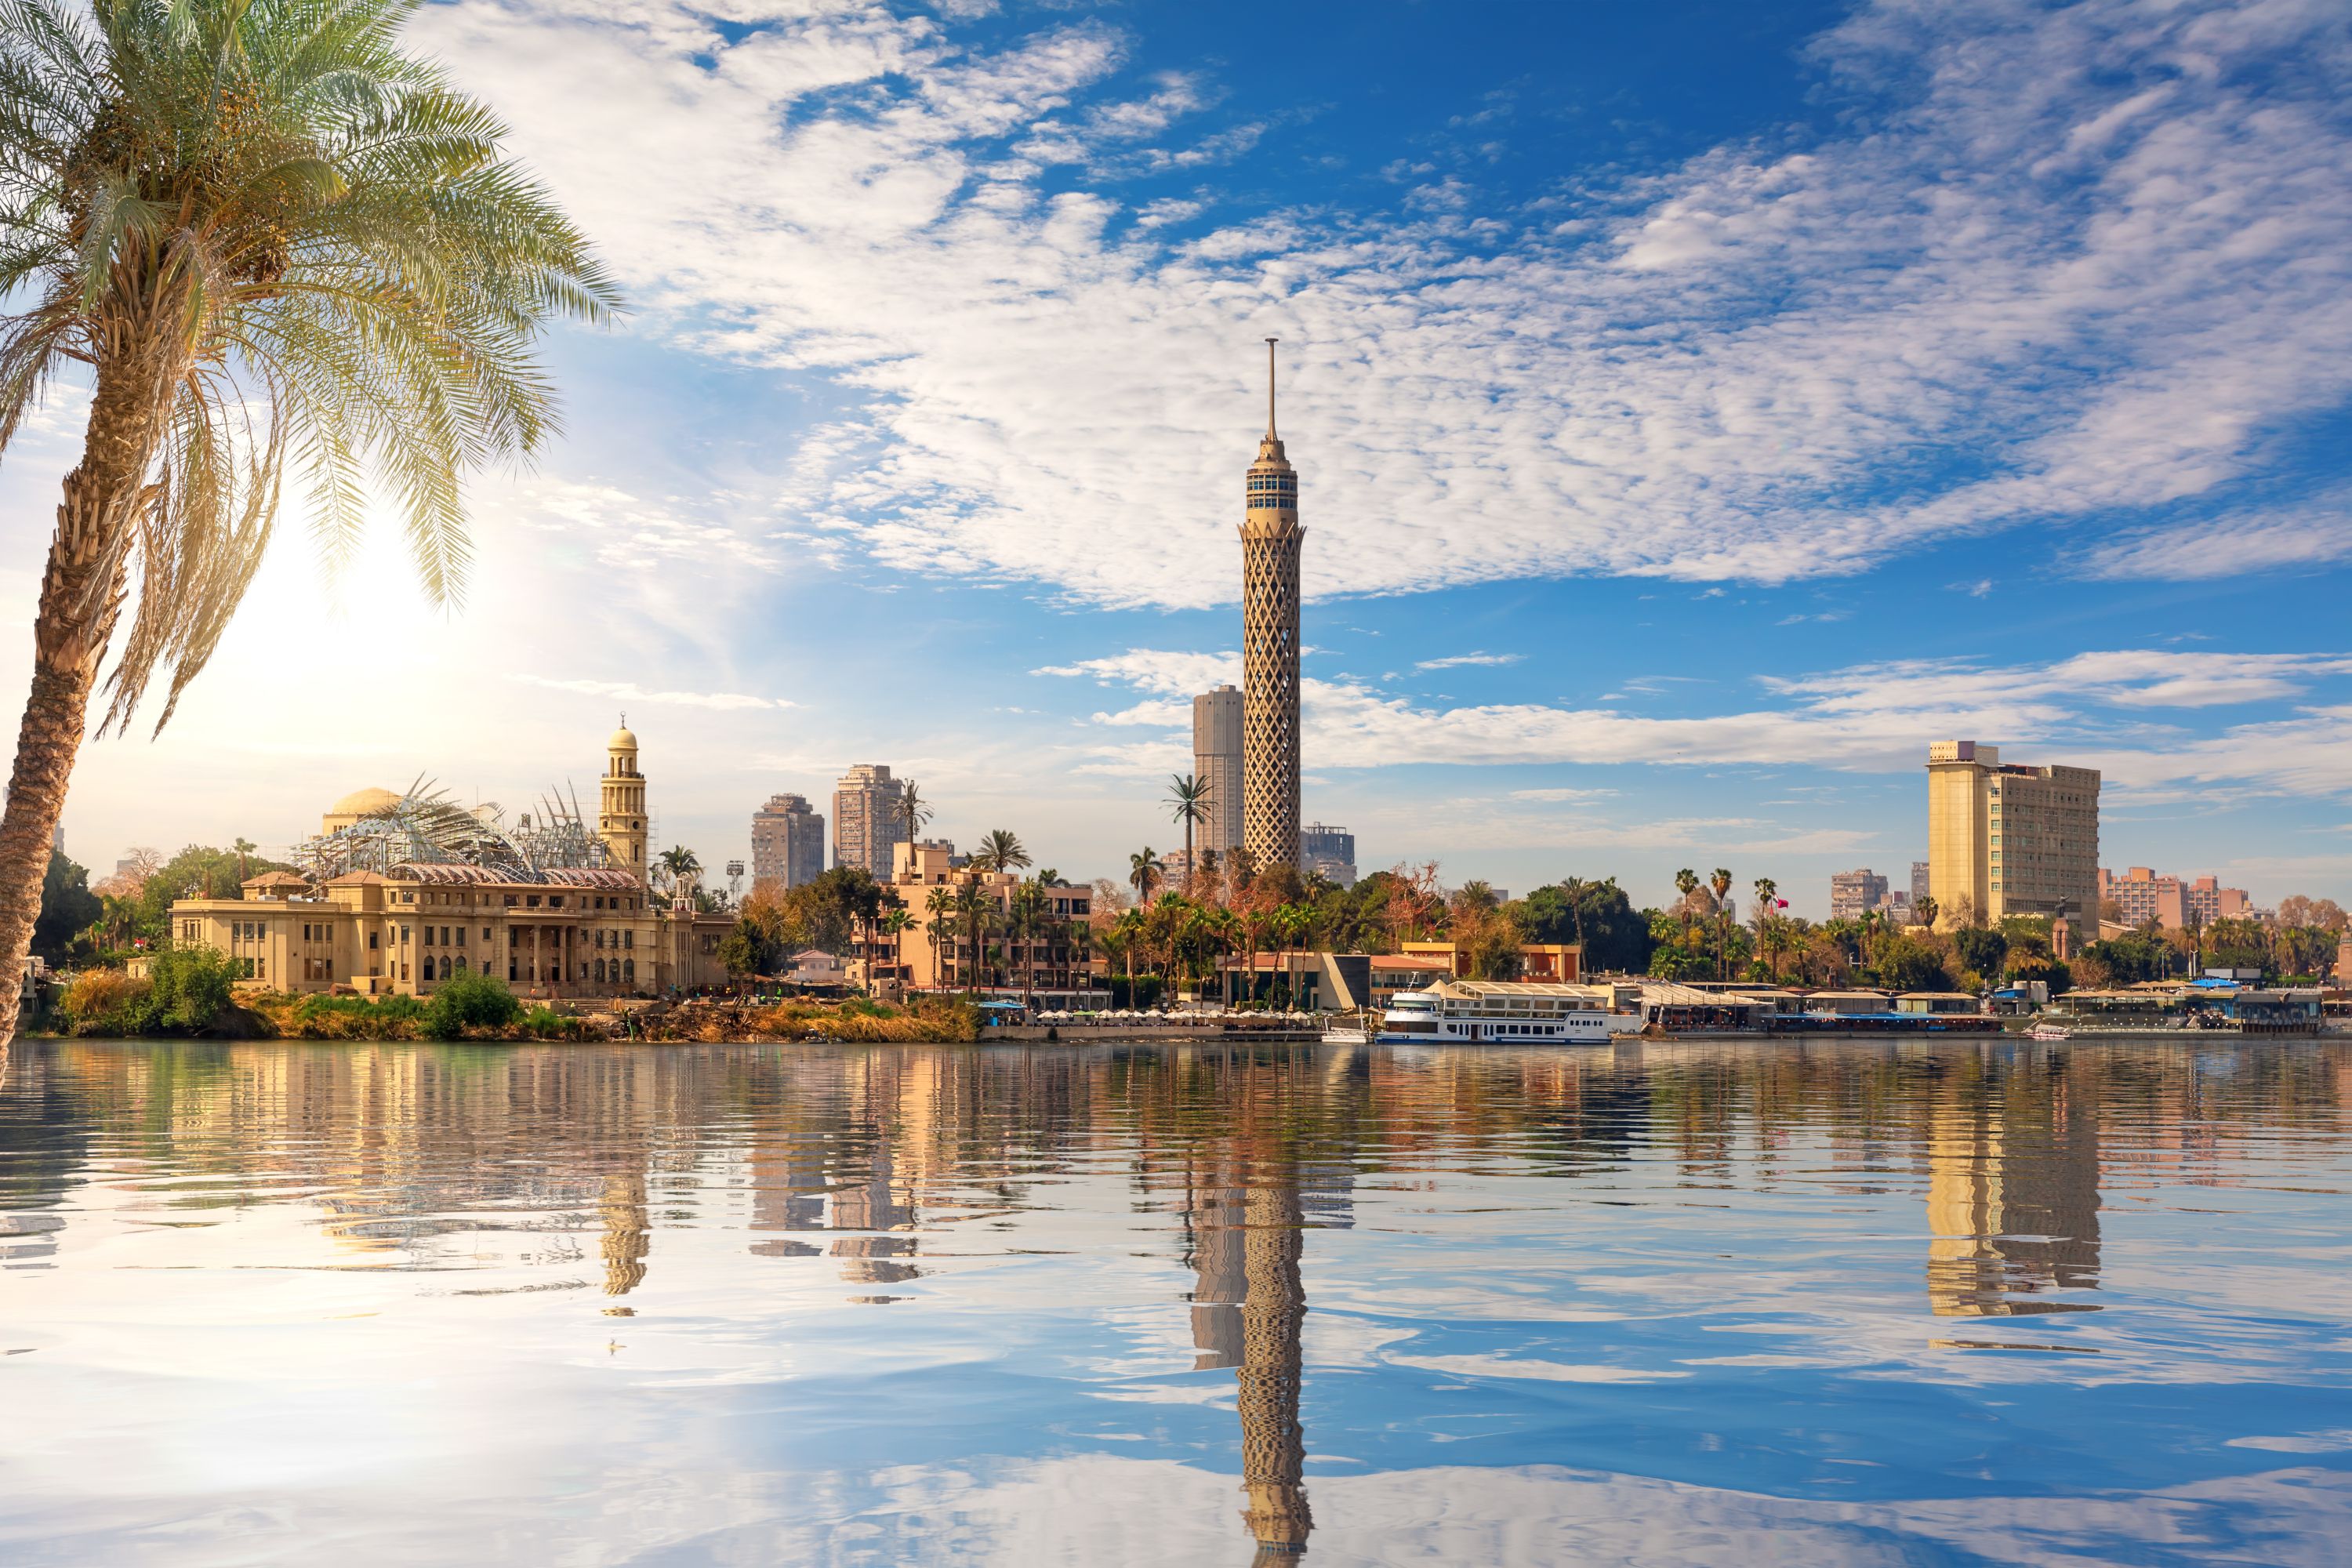 تُعد القاهرة من أكبر وأهم مدن جمهورية مصر العربية وهي عاصمتها، حيث تتمتع بموقع جغرافي هام في شمال مصر على جانب جزر نهر النيل